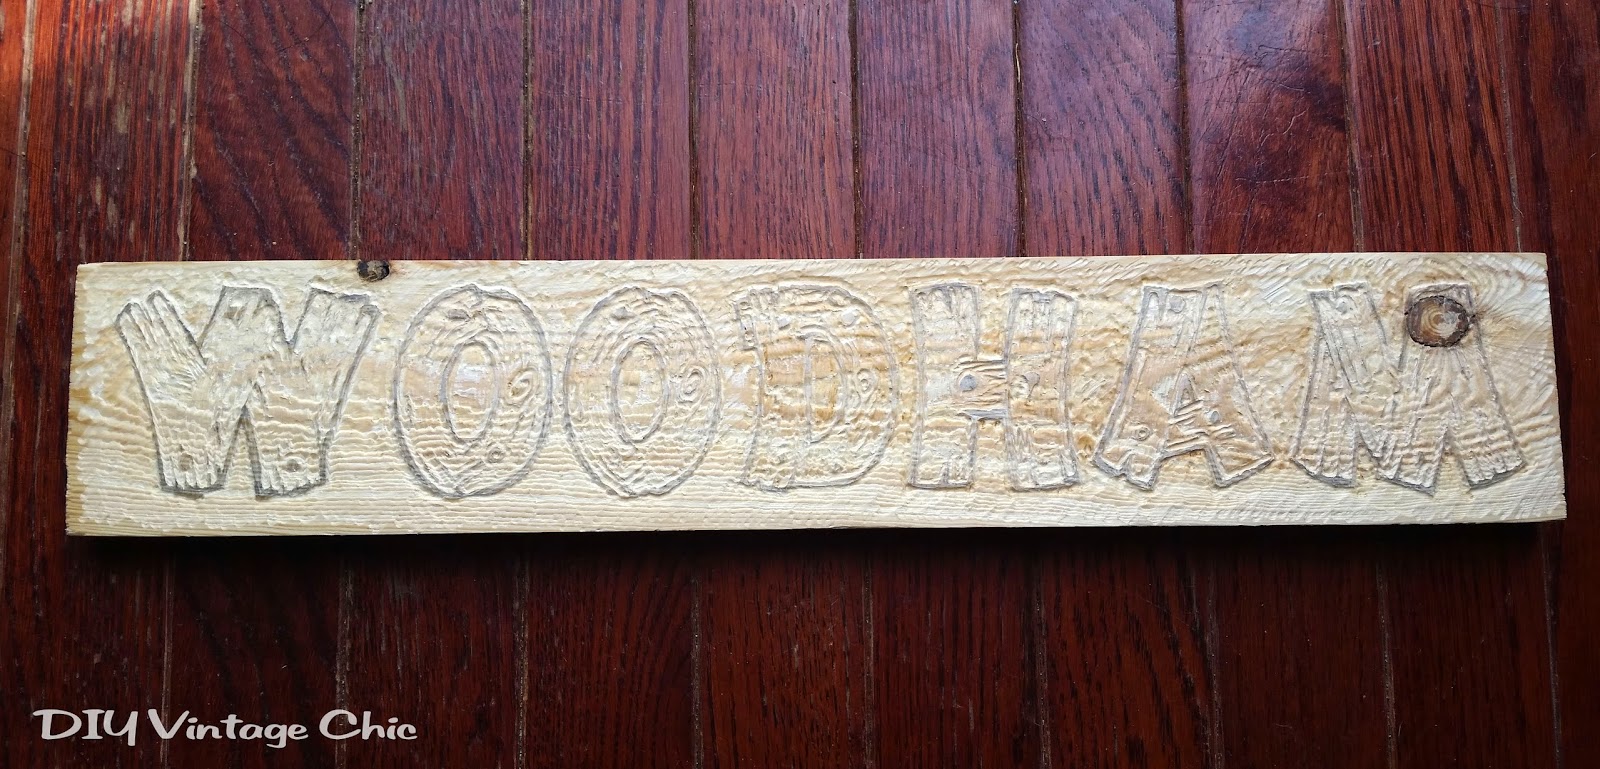 DIY Vintage Chic: DIY Wooden Engraved Sign